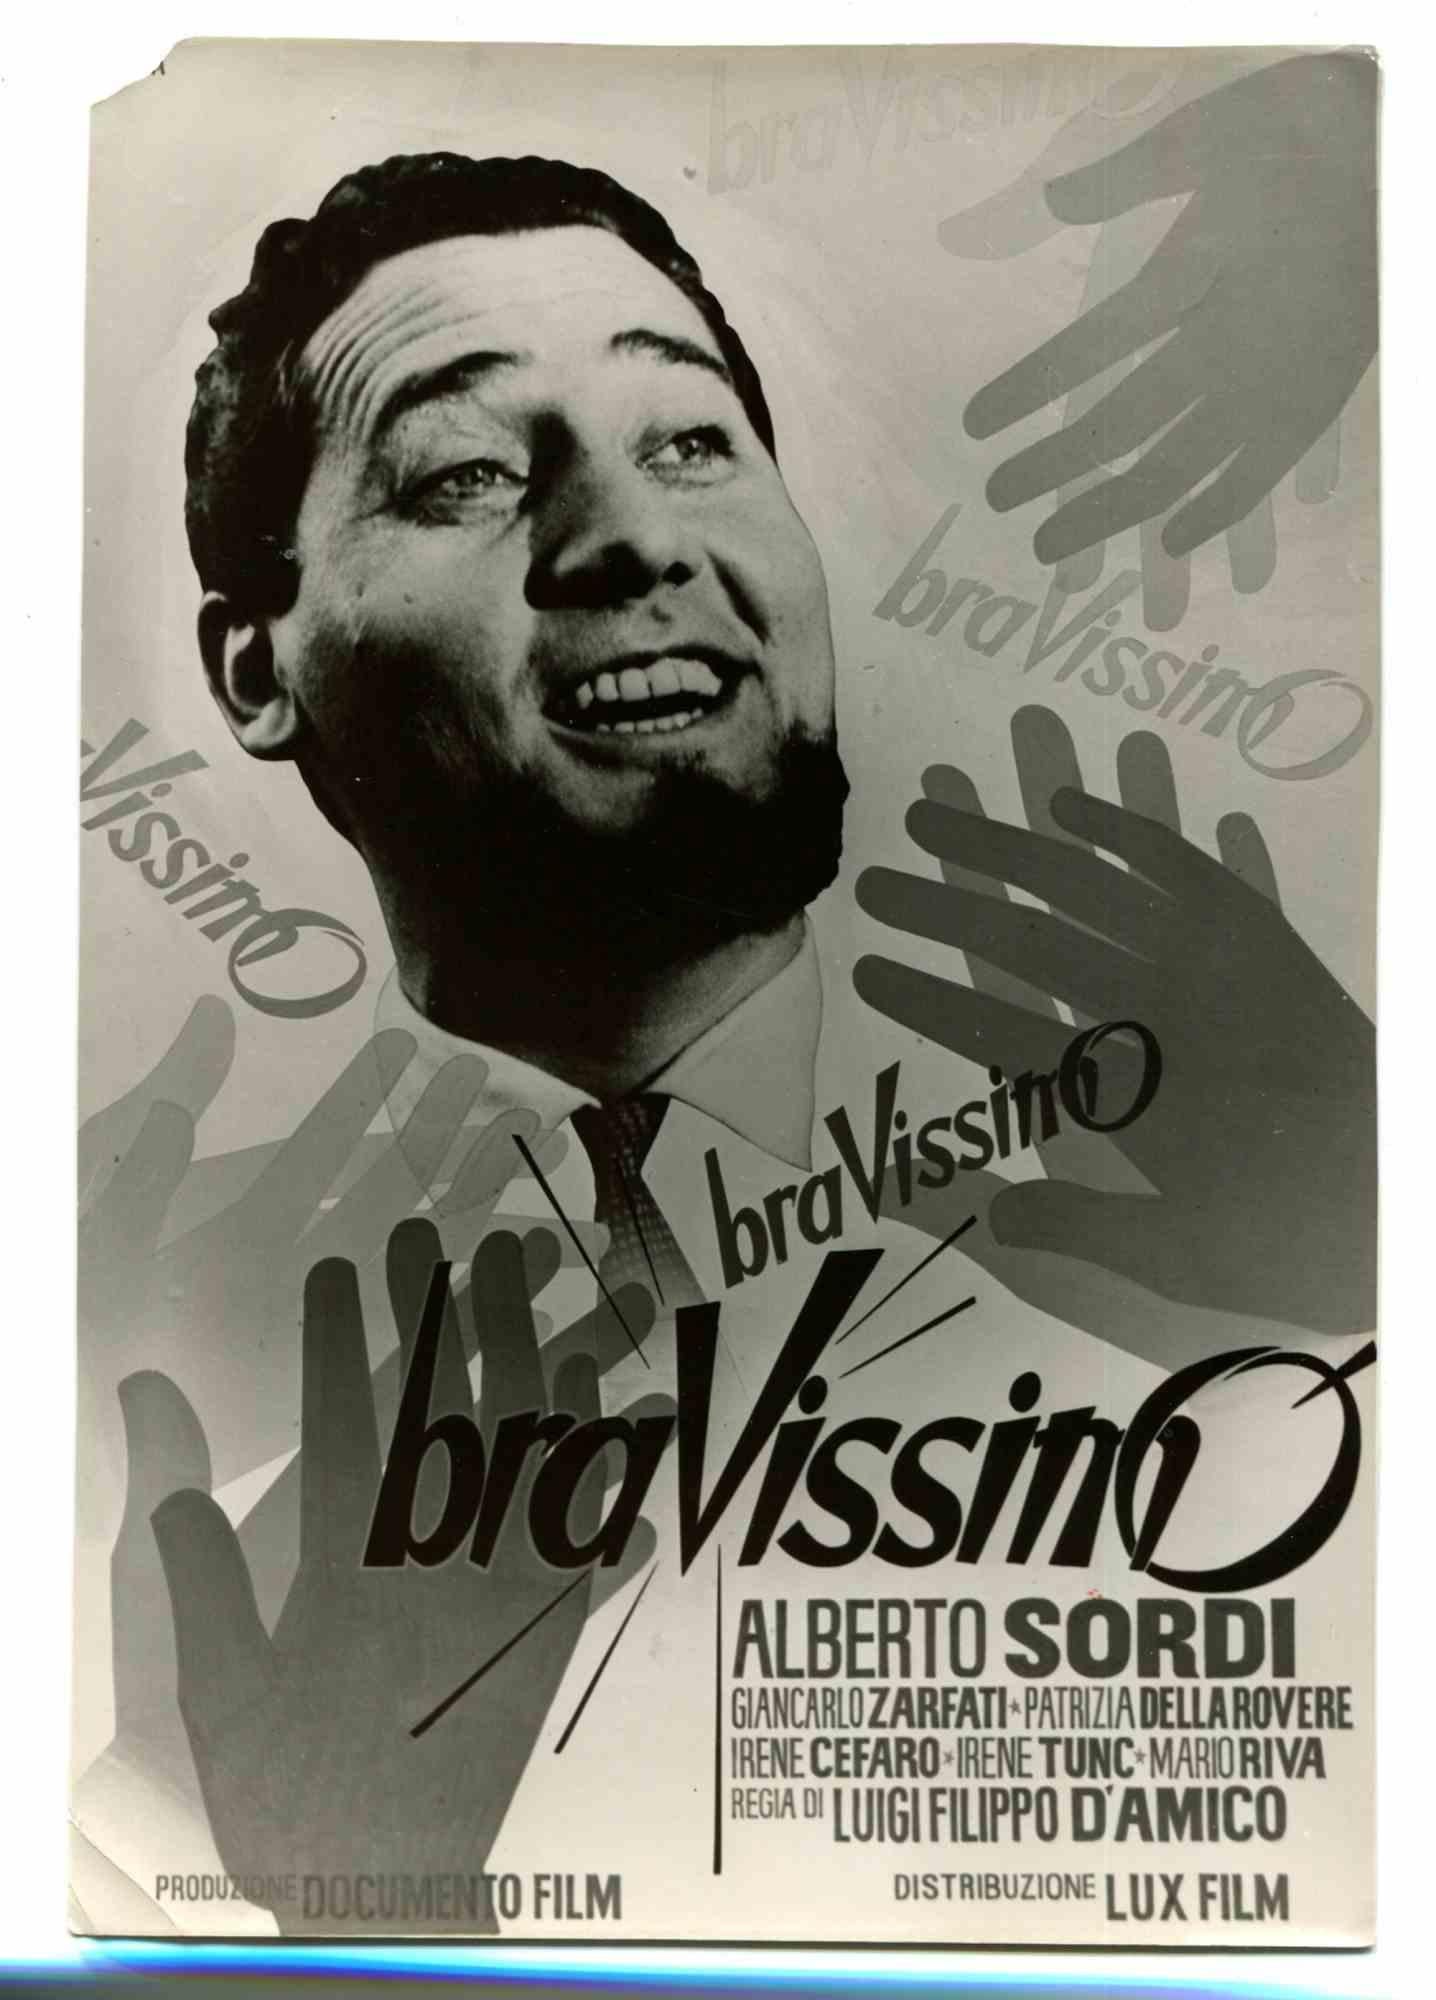 Unknown Figurative Photograph - Alberto Sordi in "Bravissimo" - Vintage Photo - 1960s